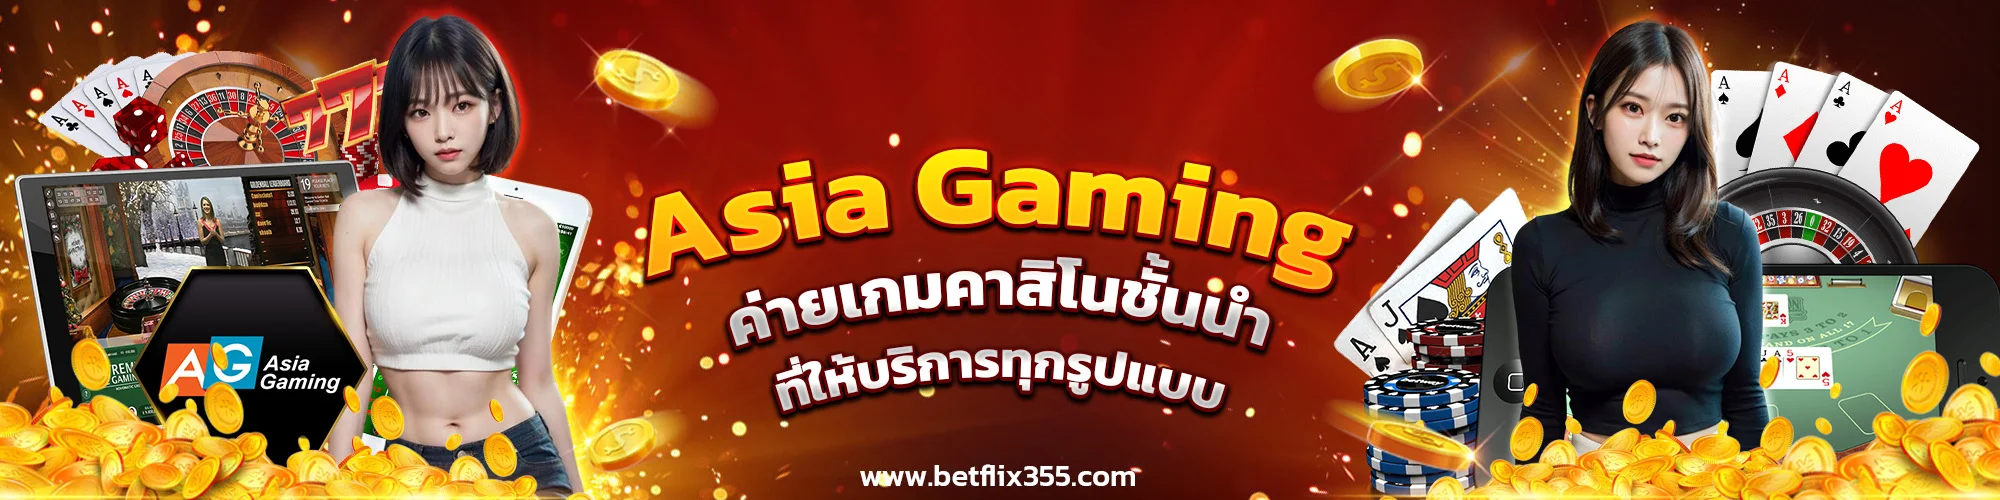 Asia Gaming ค่ายเกมคาสิโนชั้นนำ ที่ให้บริการทุกรูปแบบ